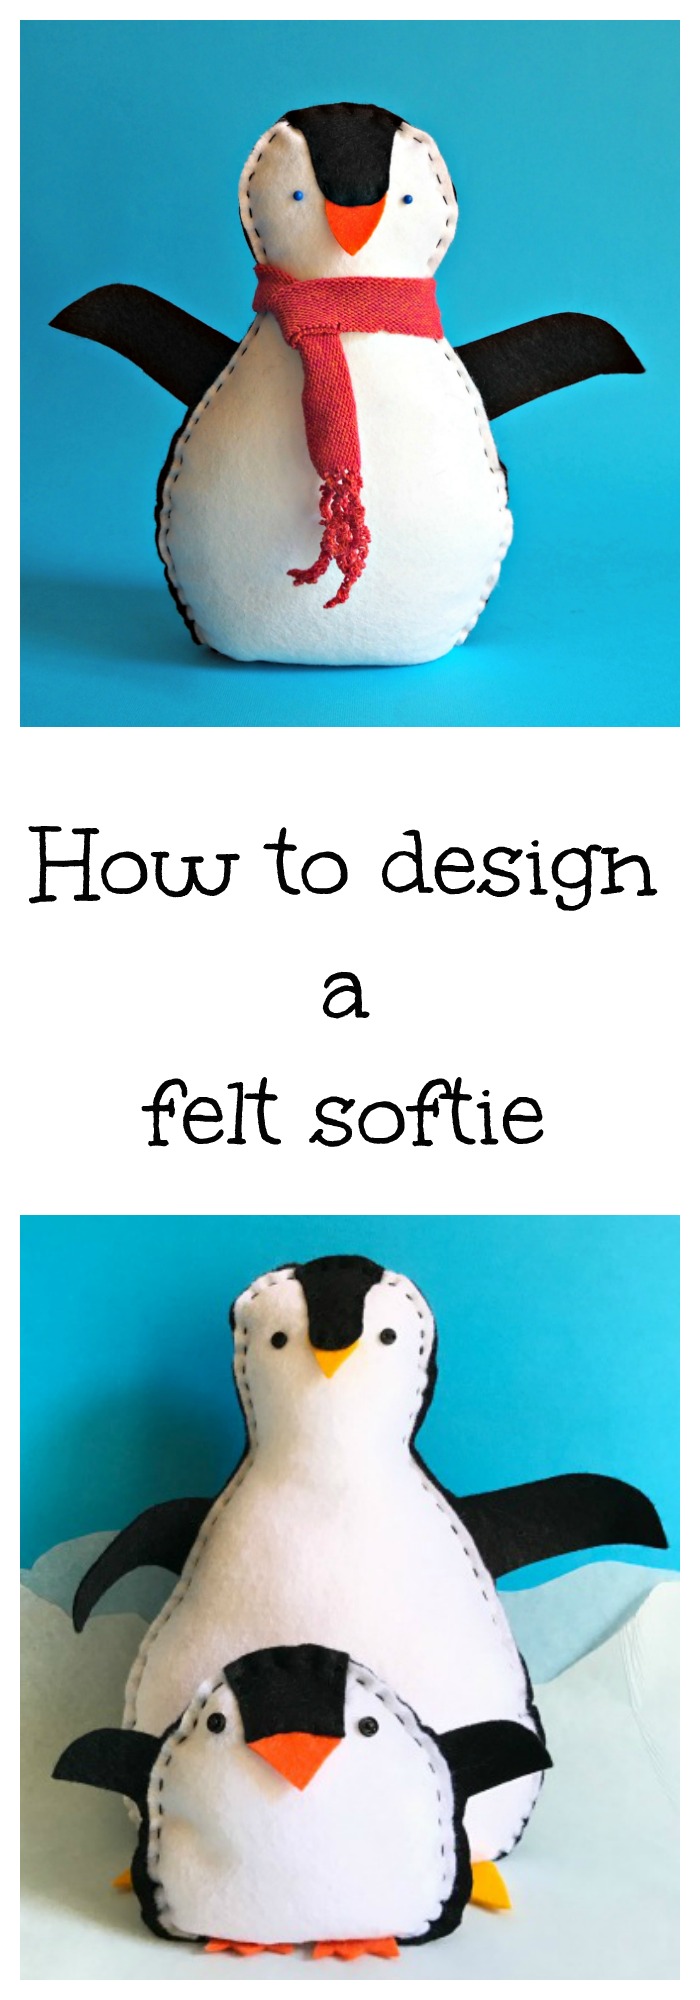 How do you design a softie